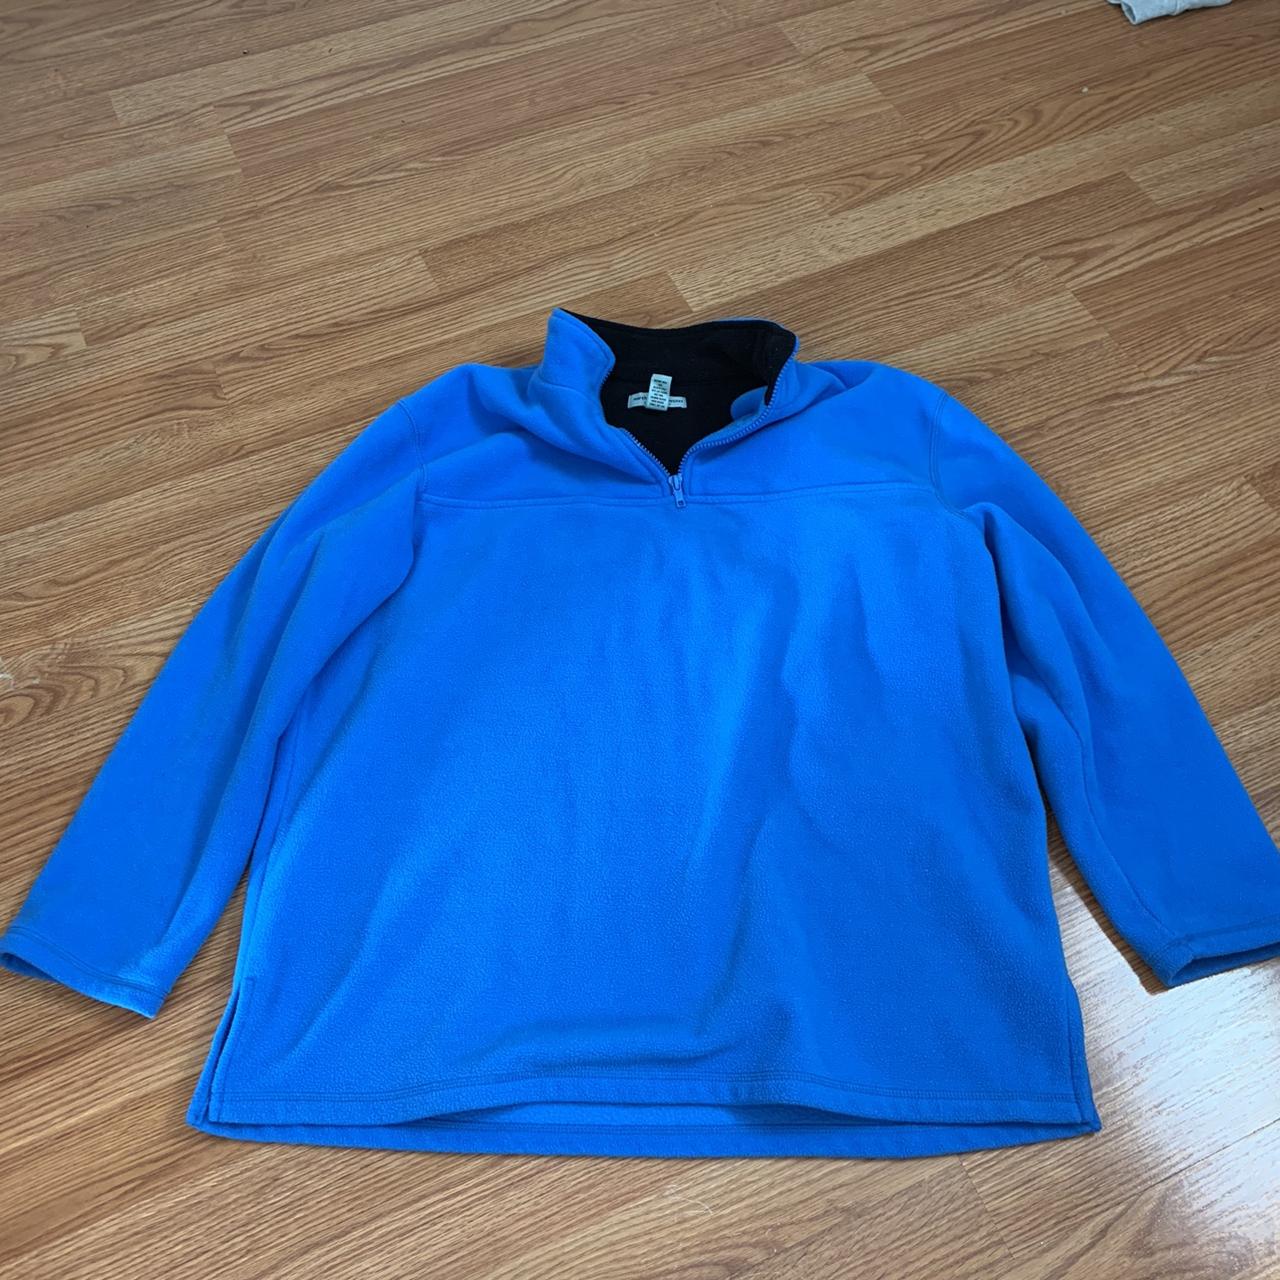 Product Image 2 - Blue fleece sweater size petite